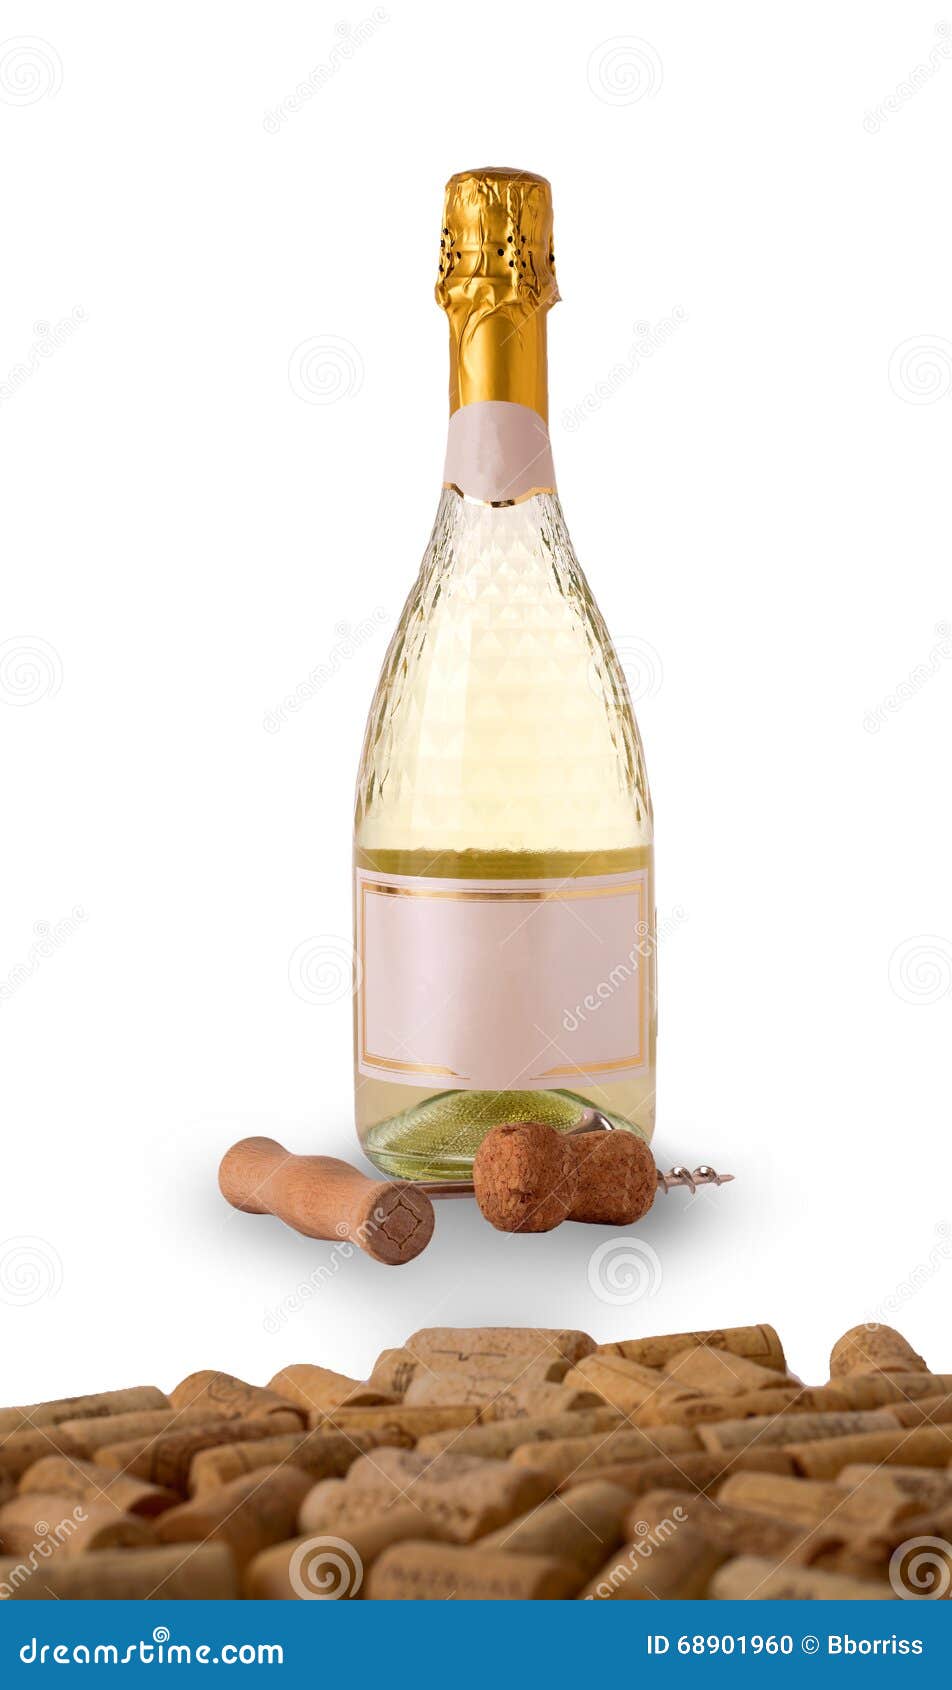 bottle of light wine and corkscrew